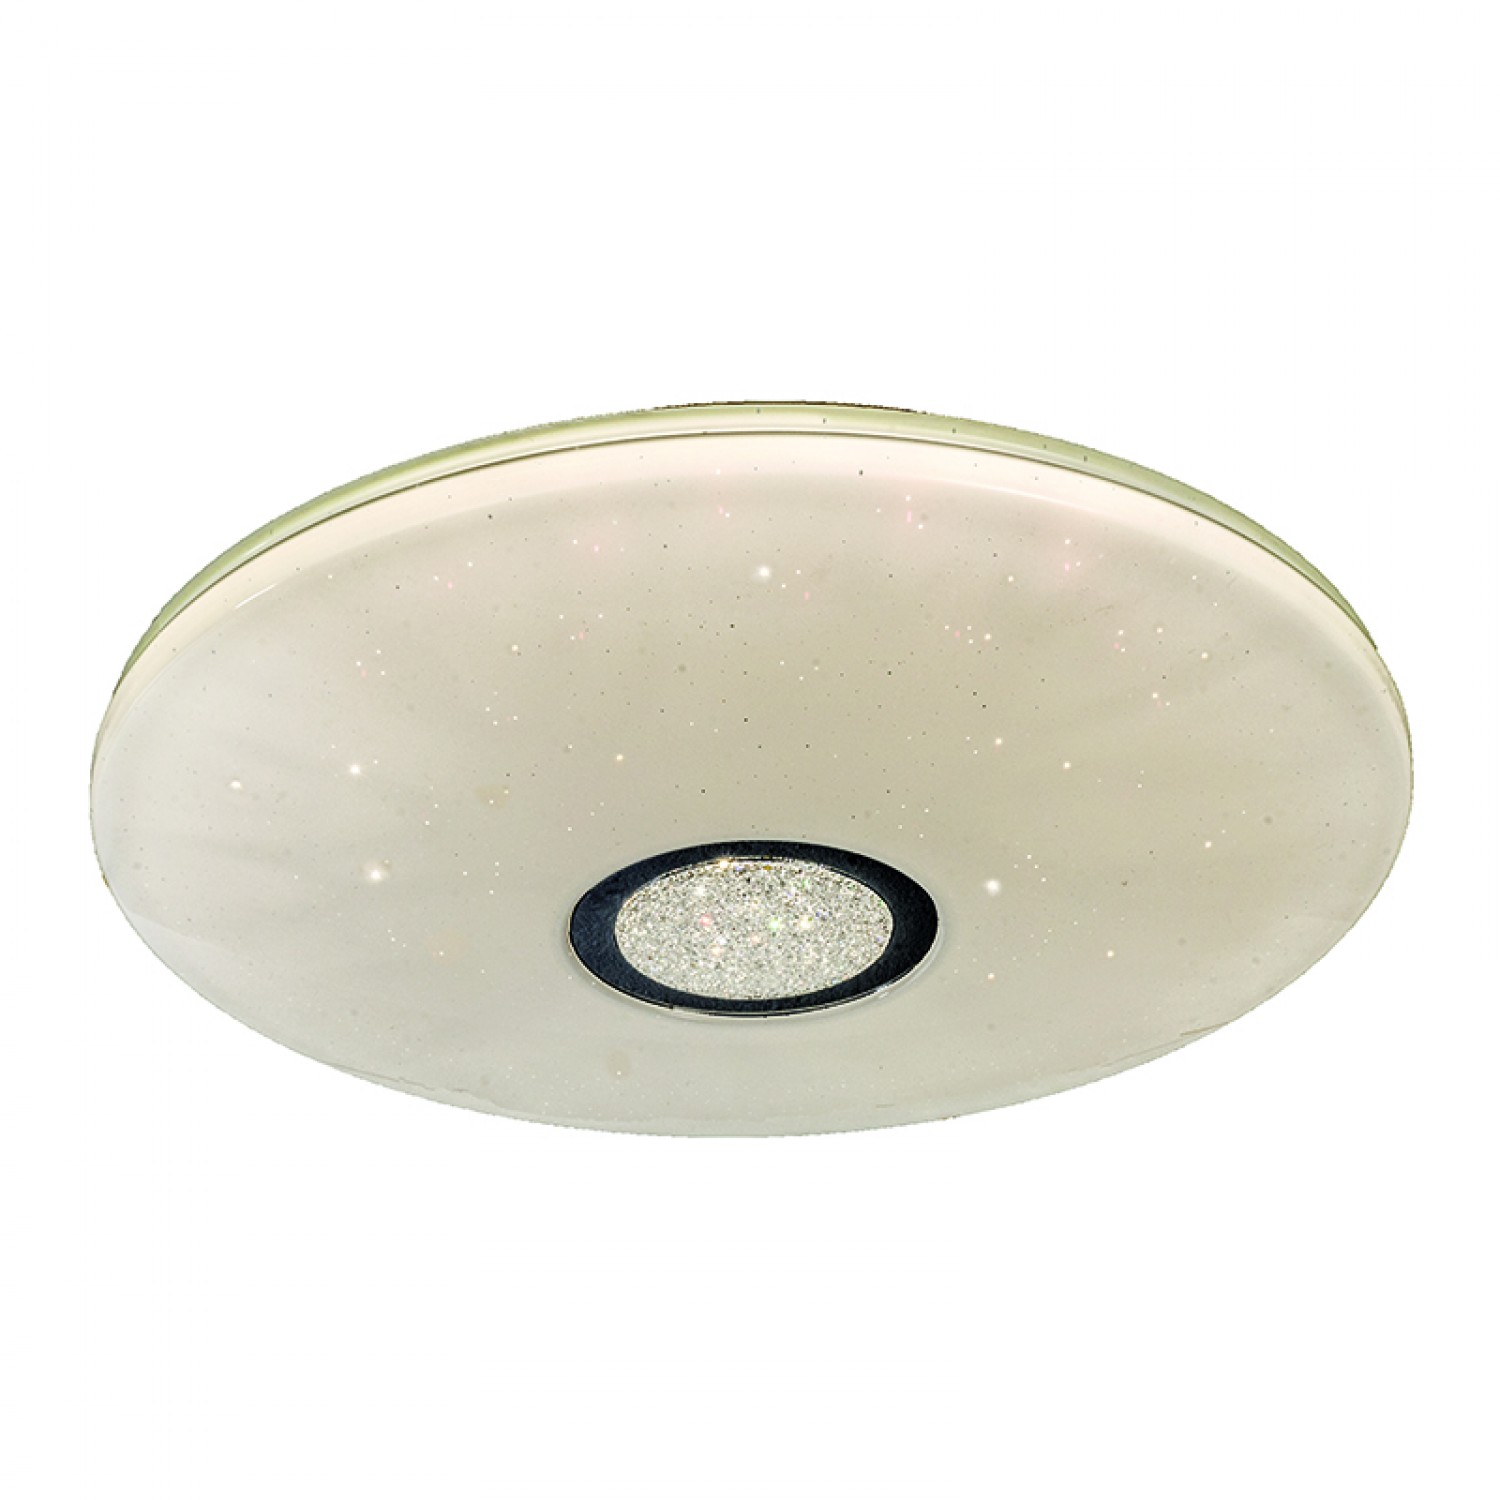 Πλαφονιέρα οροφής LED 32W 4000K από λευκό ακρυλικό D:50cm (42161-Α-Λευκό)